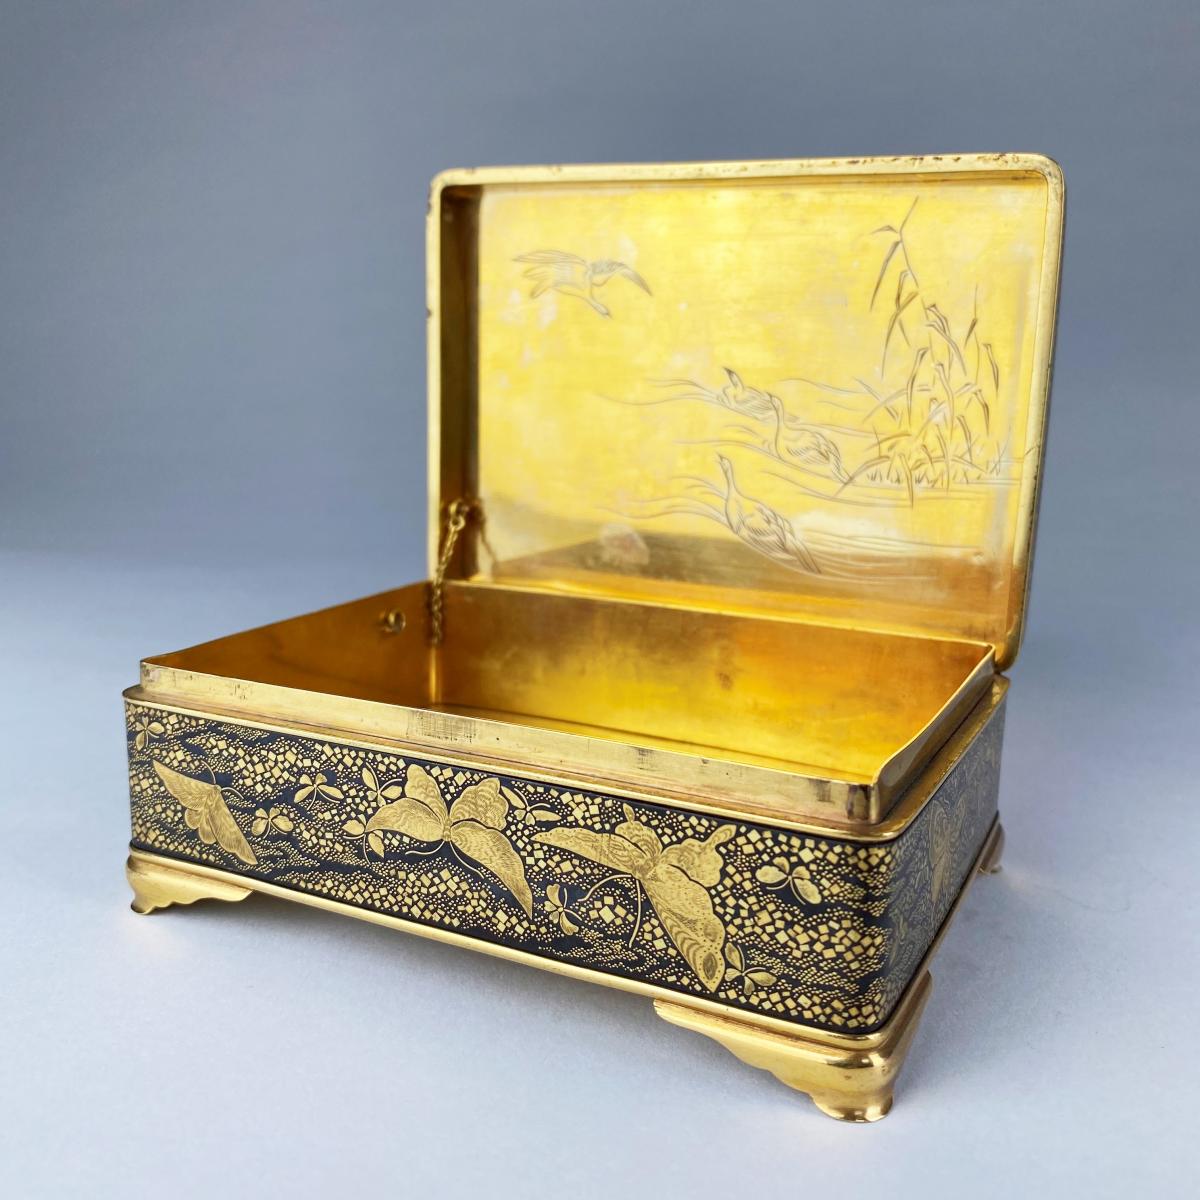 A fine Japanese iron box by Komai Late 19th Century